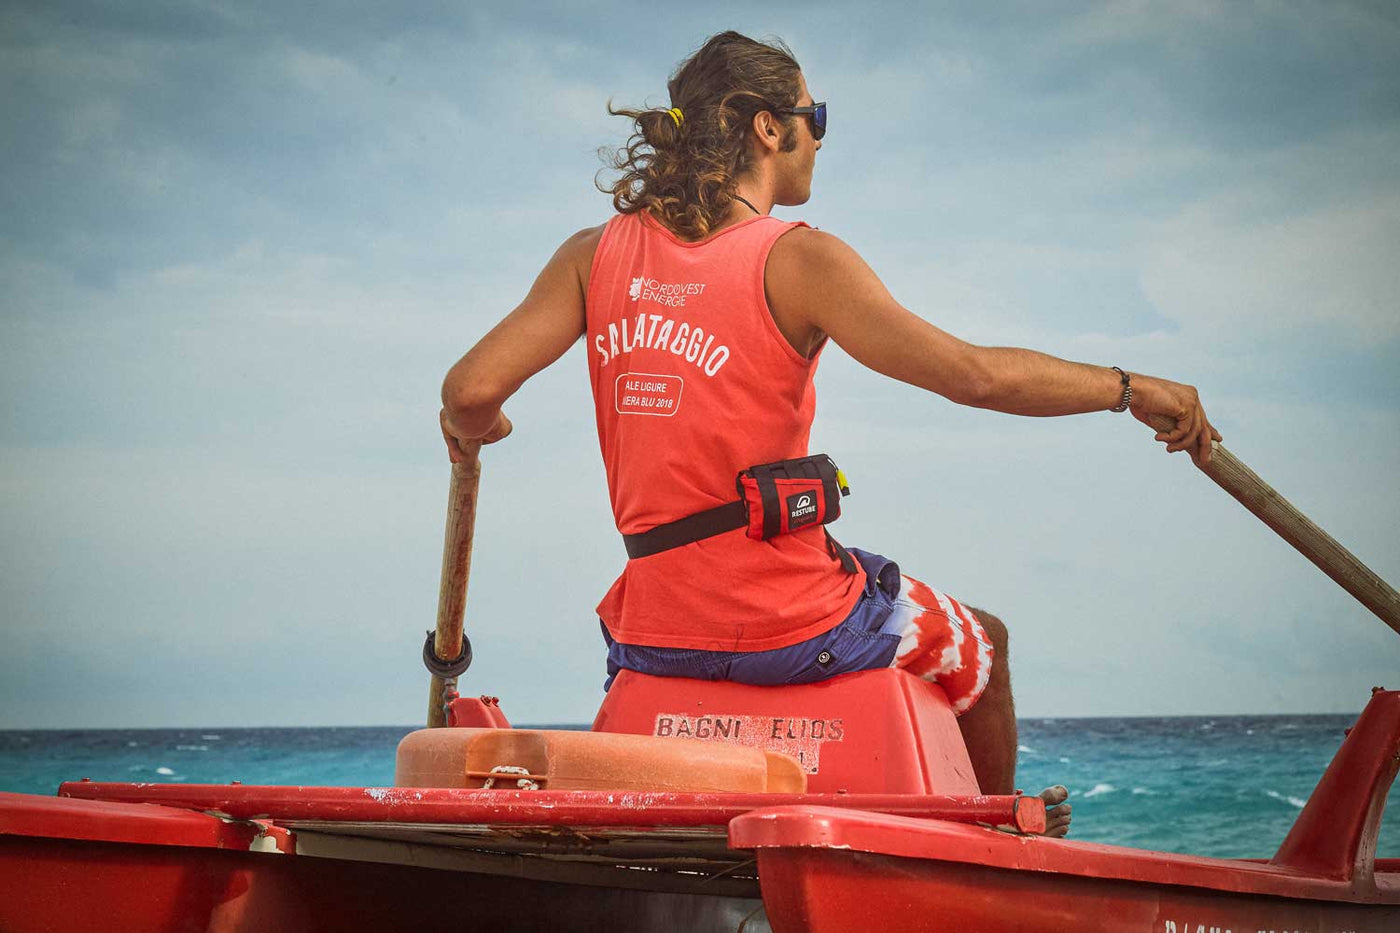 Rettungsschwimmer mit Restube Lifeguard sitzt auf Katamaran und beobachtet das Meer.